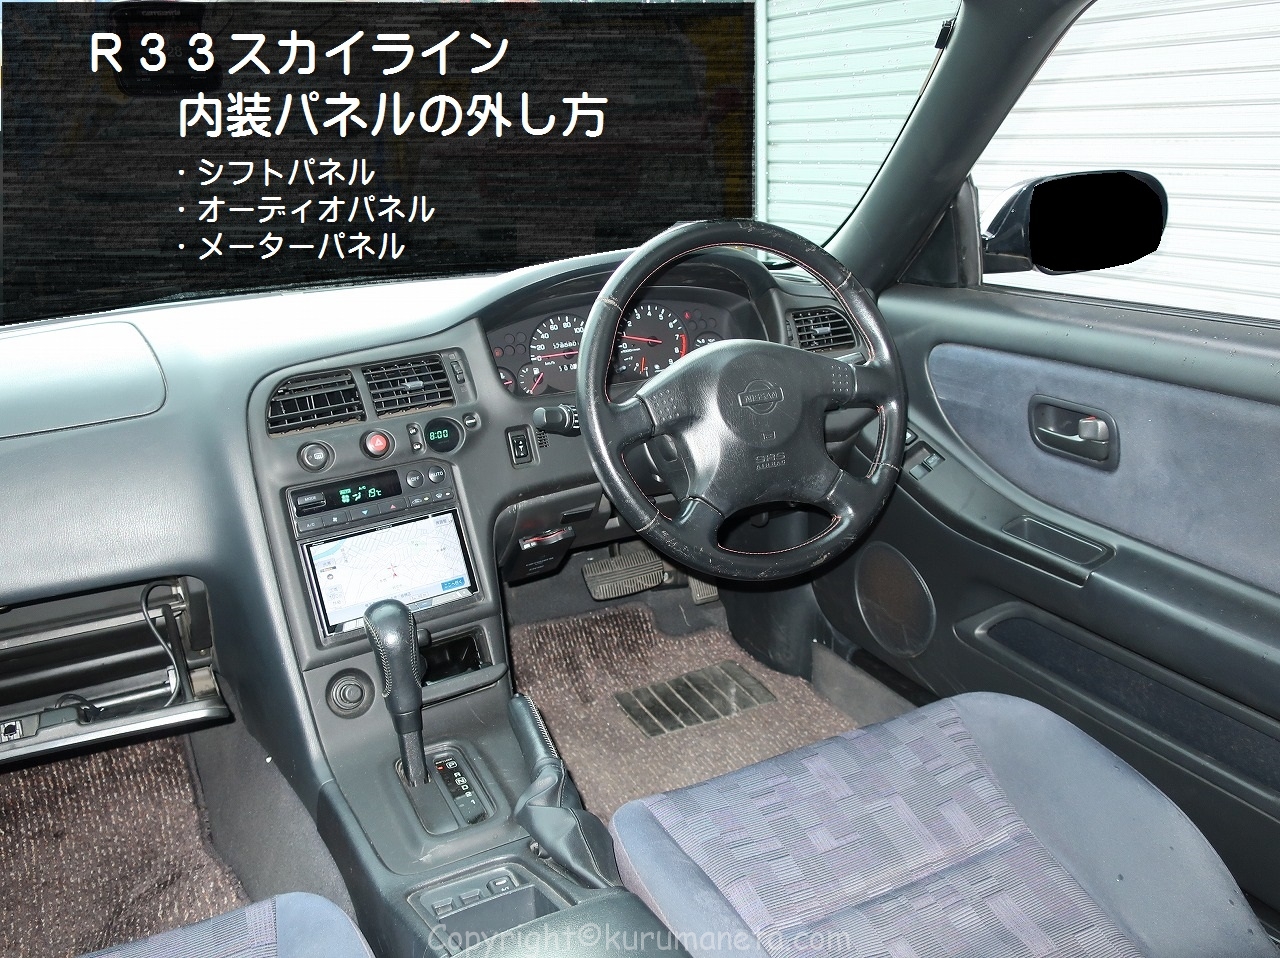 R33スカイラインの内装 シフトパネル オーディオパネル メーターパネル の外し方 車ネタ Com